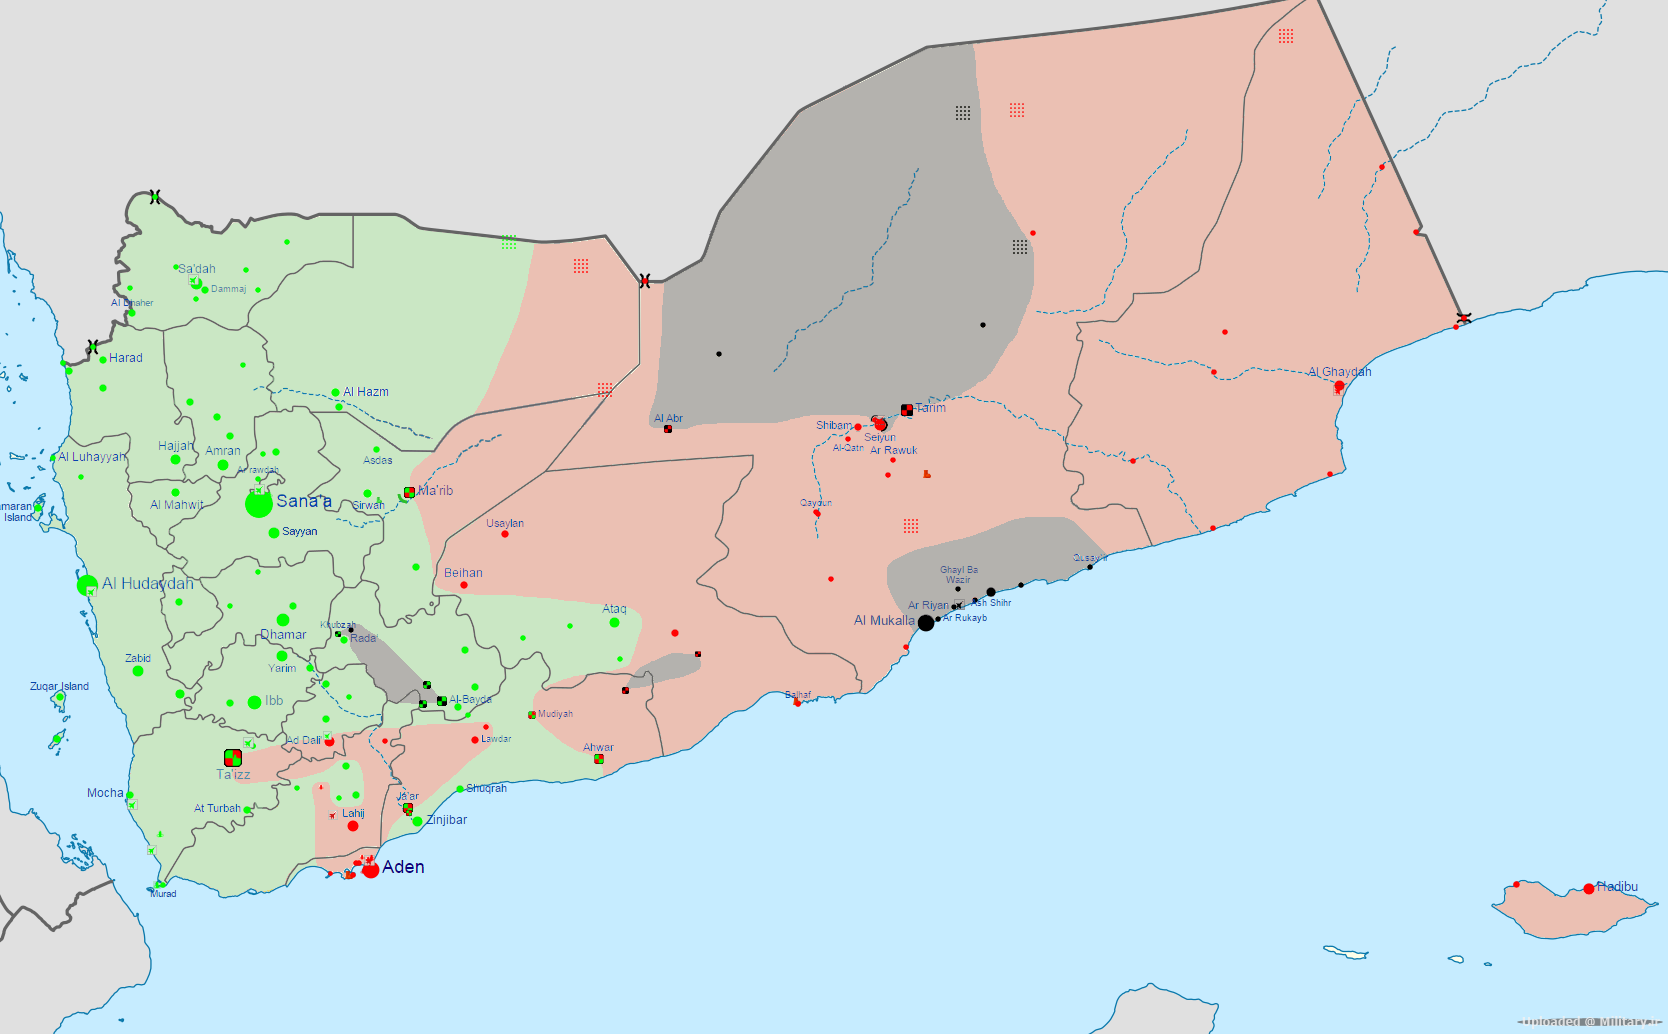 Yemen_war_detailed_map1.png